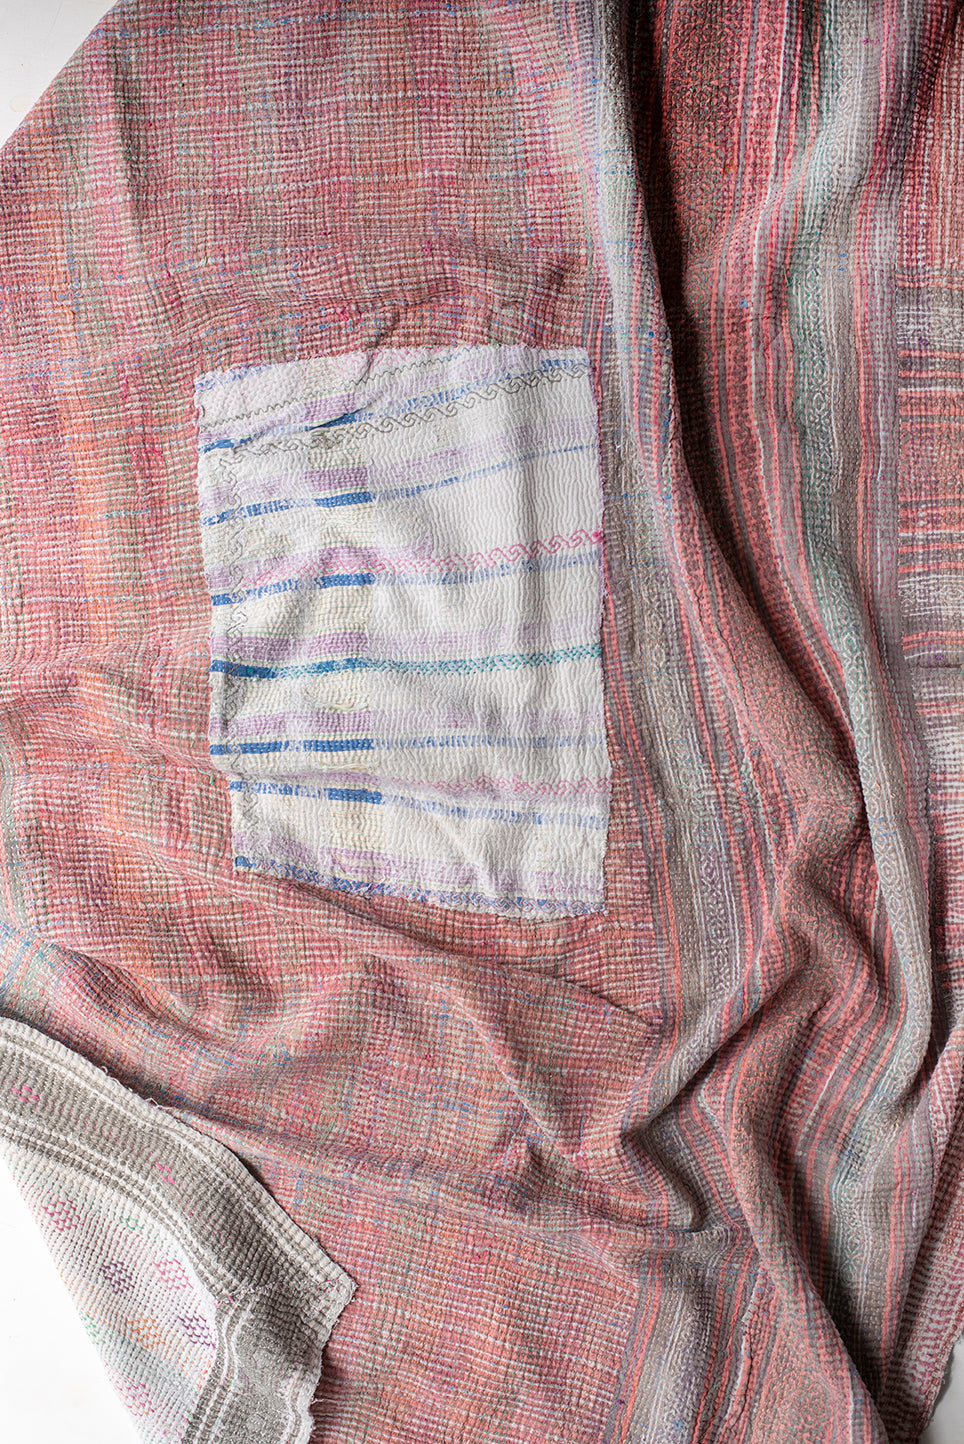 The Jane Quilt – Vintage Kantha Quilt